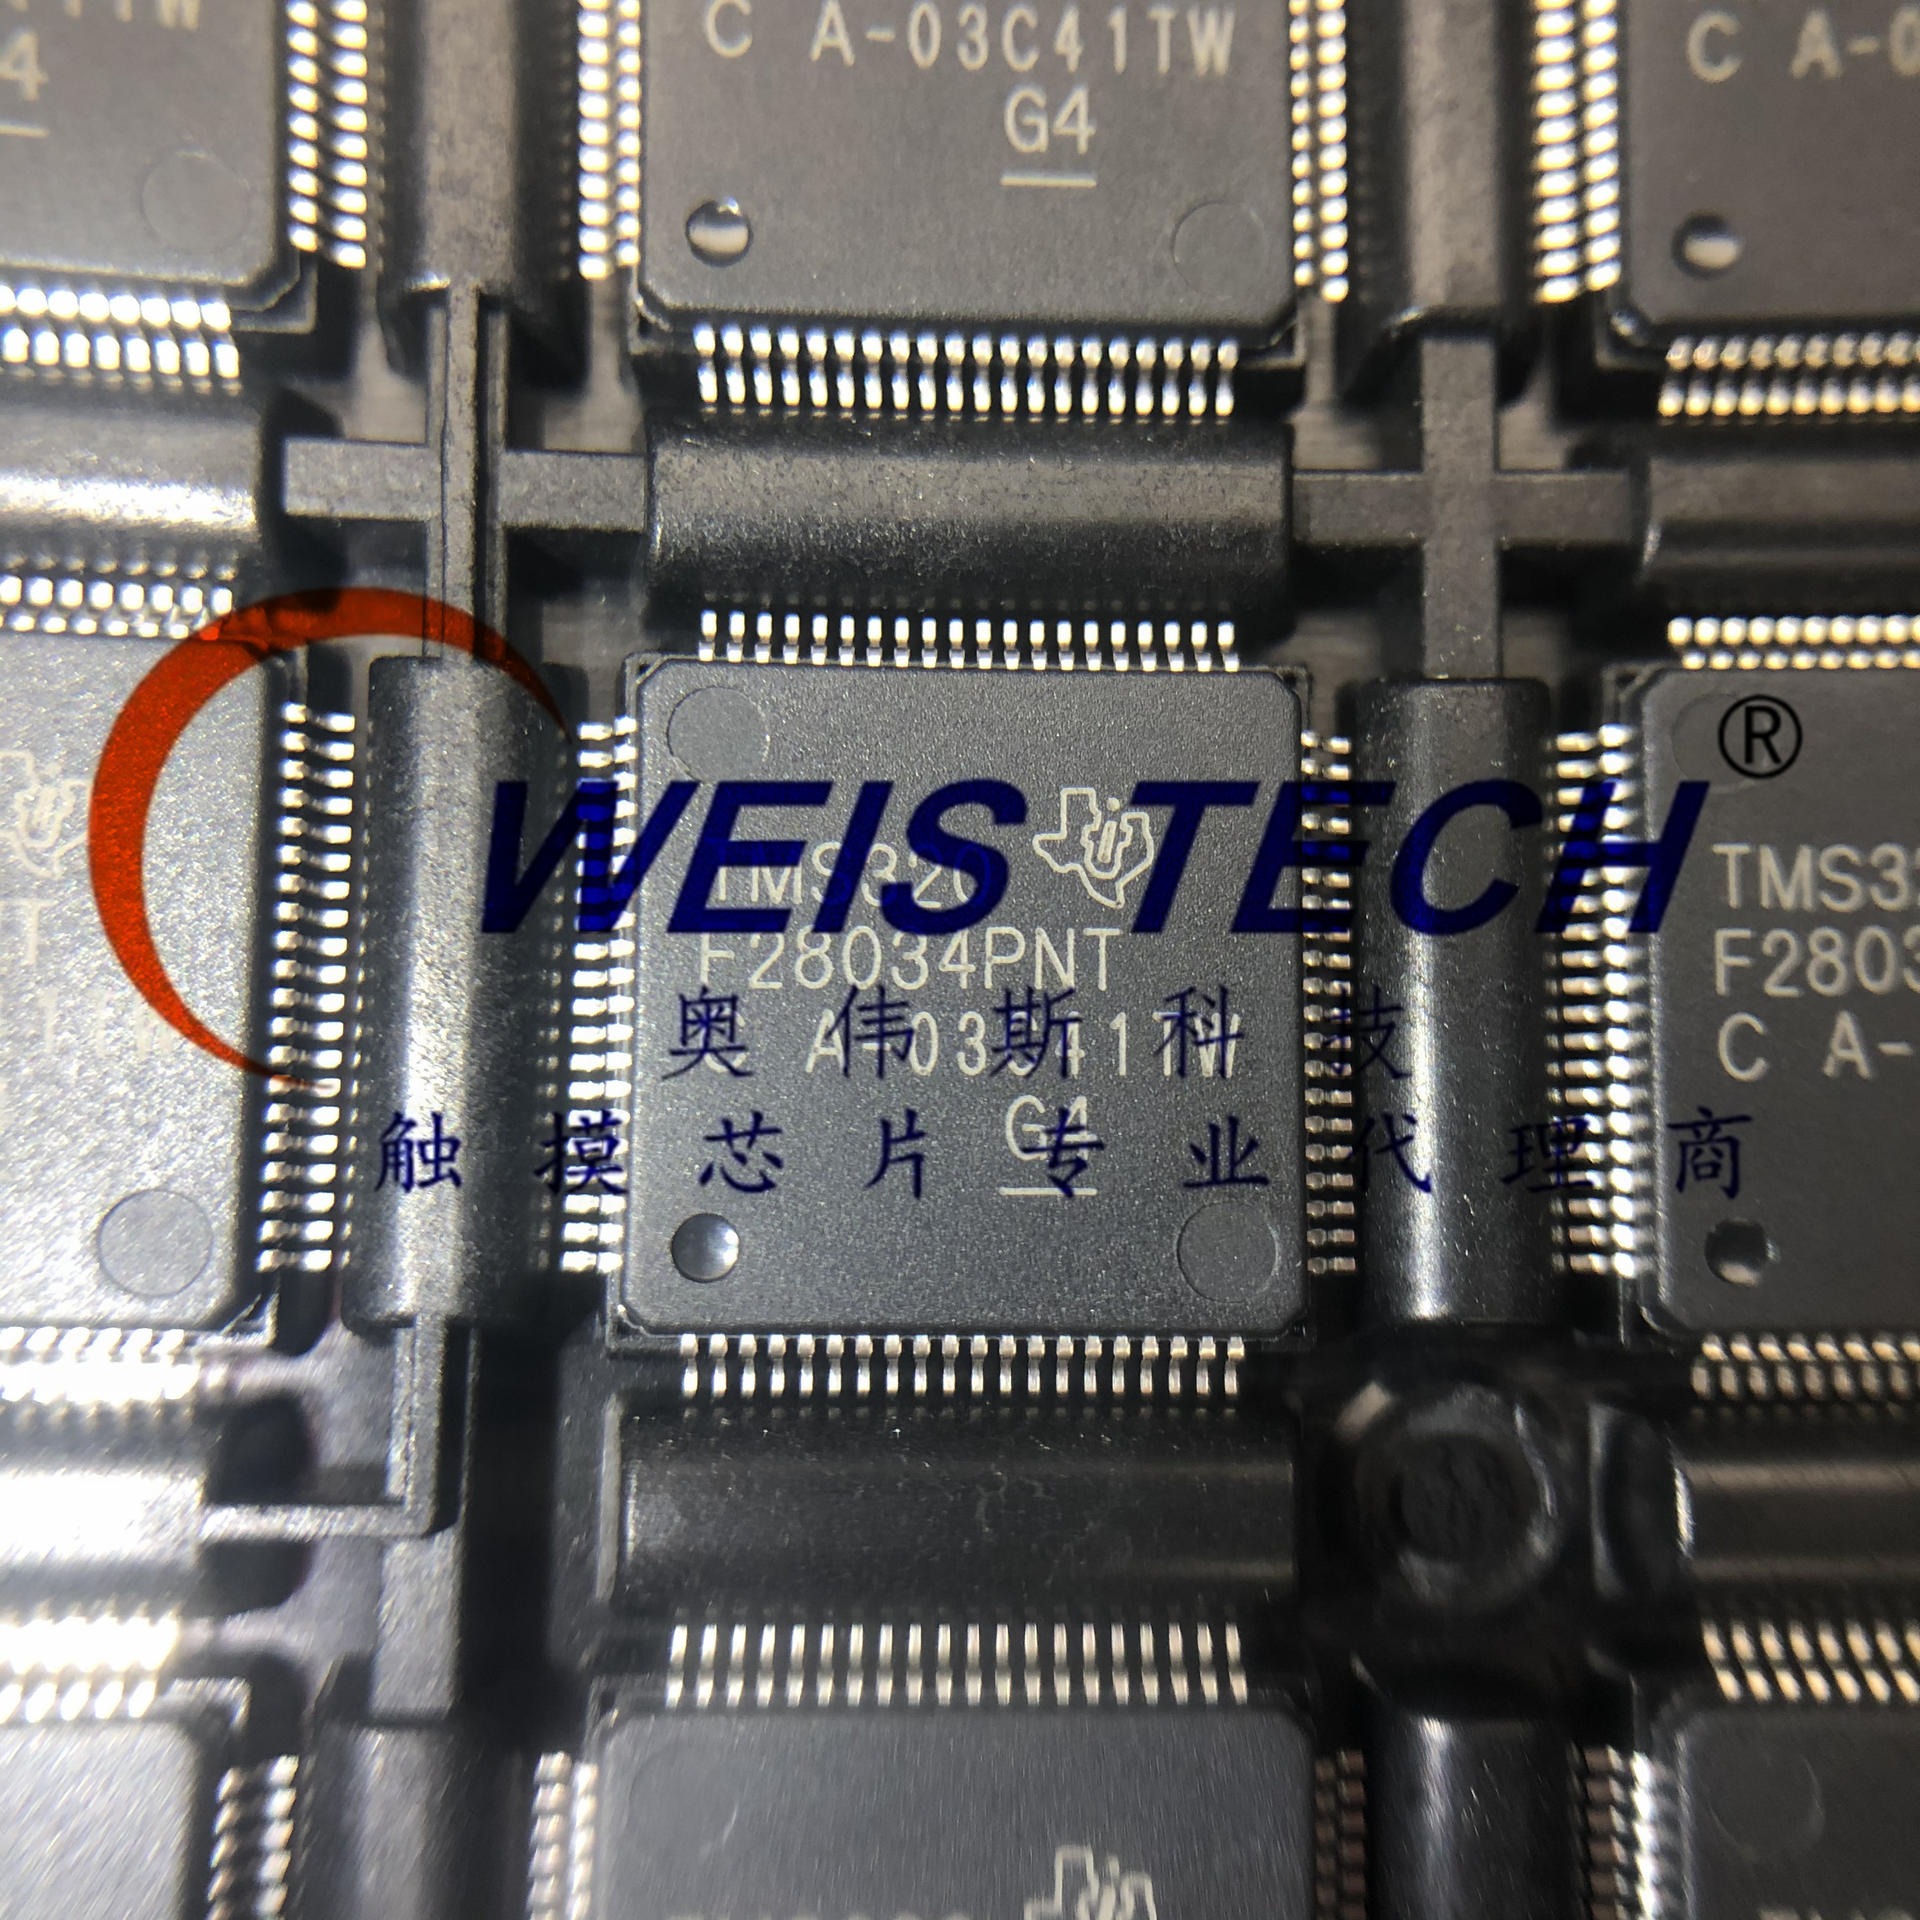 TMS320F28034PNT  电源管理芯片  触摸芯片 单片机  放算IC专业代理商芯片  配单 经销与代理